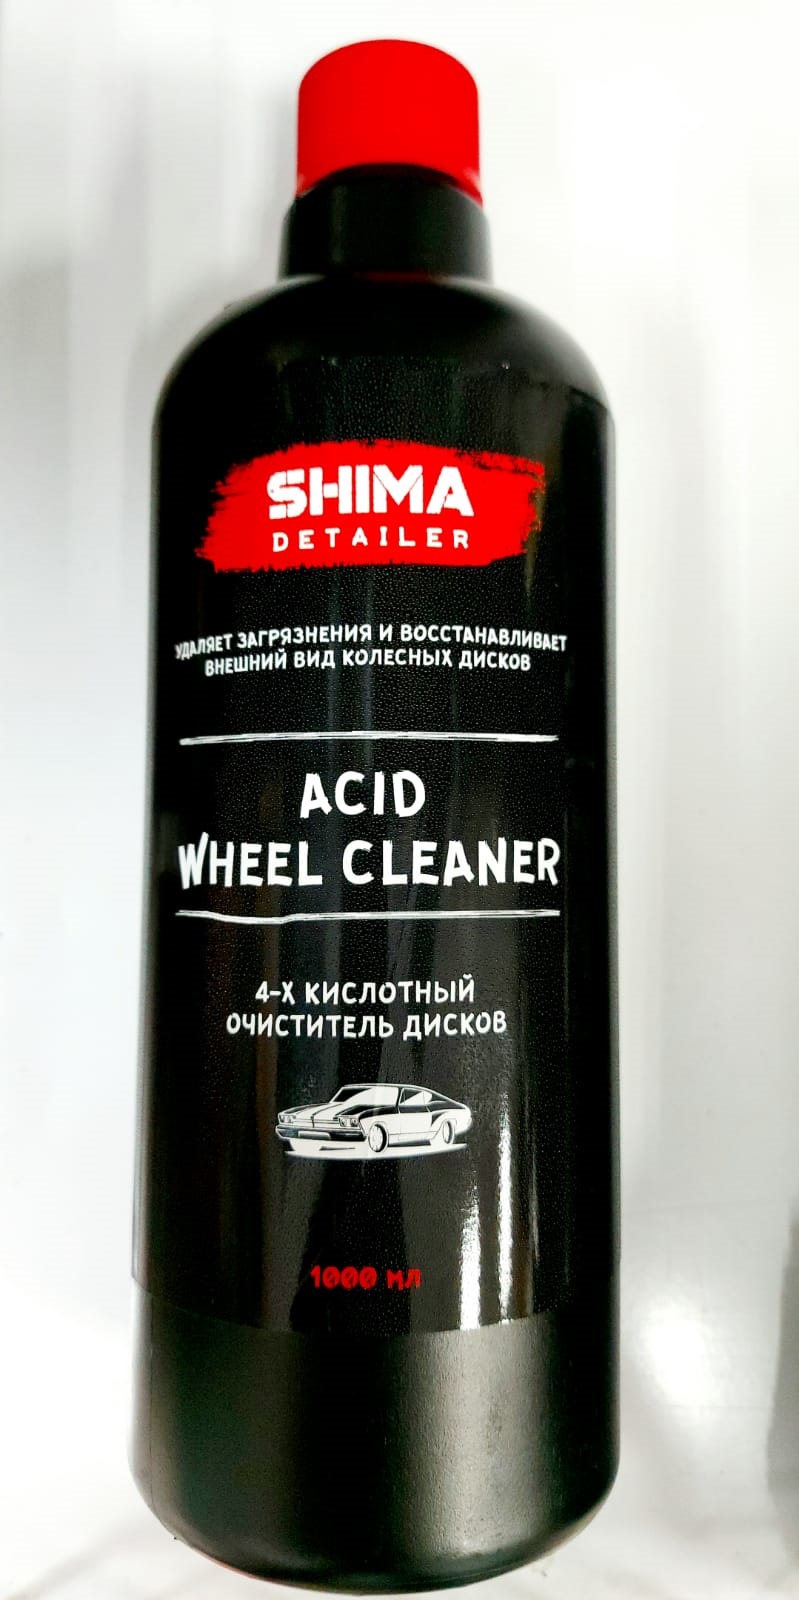 SHIMA DETAILER Очиститель дисков 4-х кислотный ACID WHEEL CLEANER 1л 